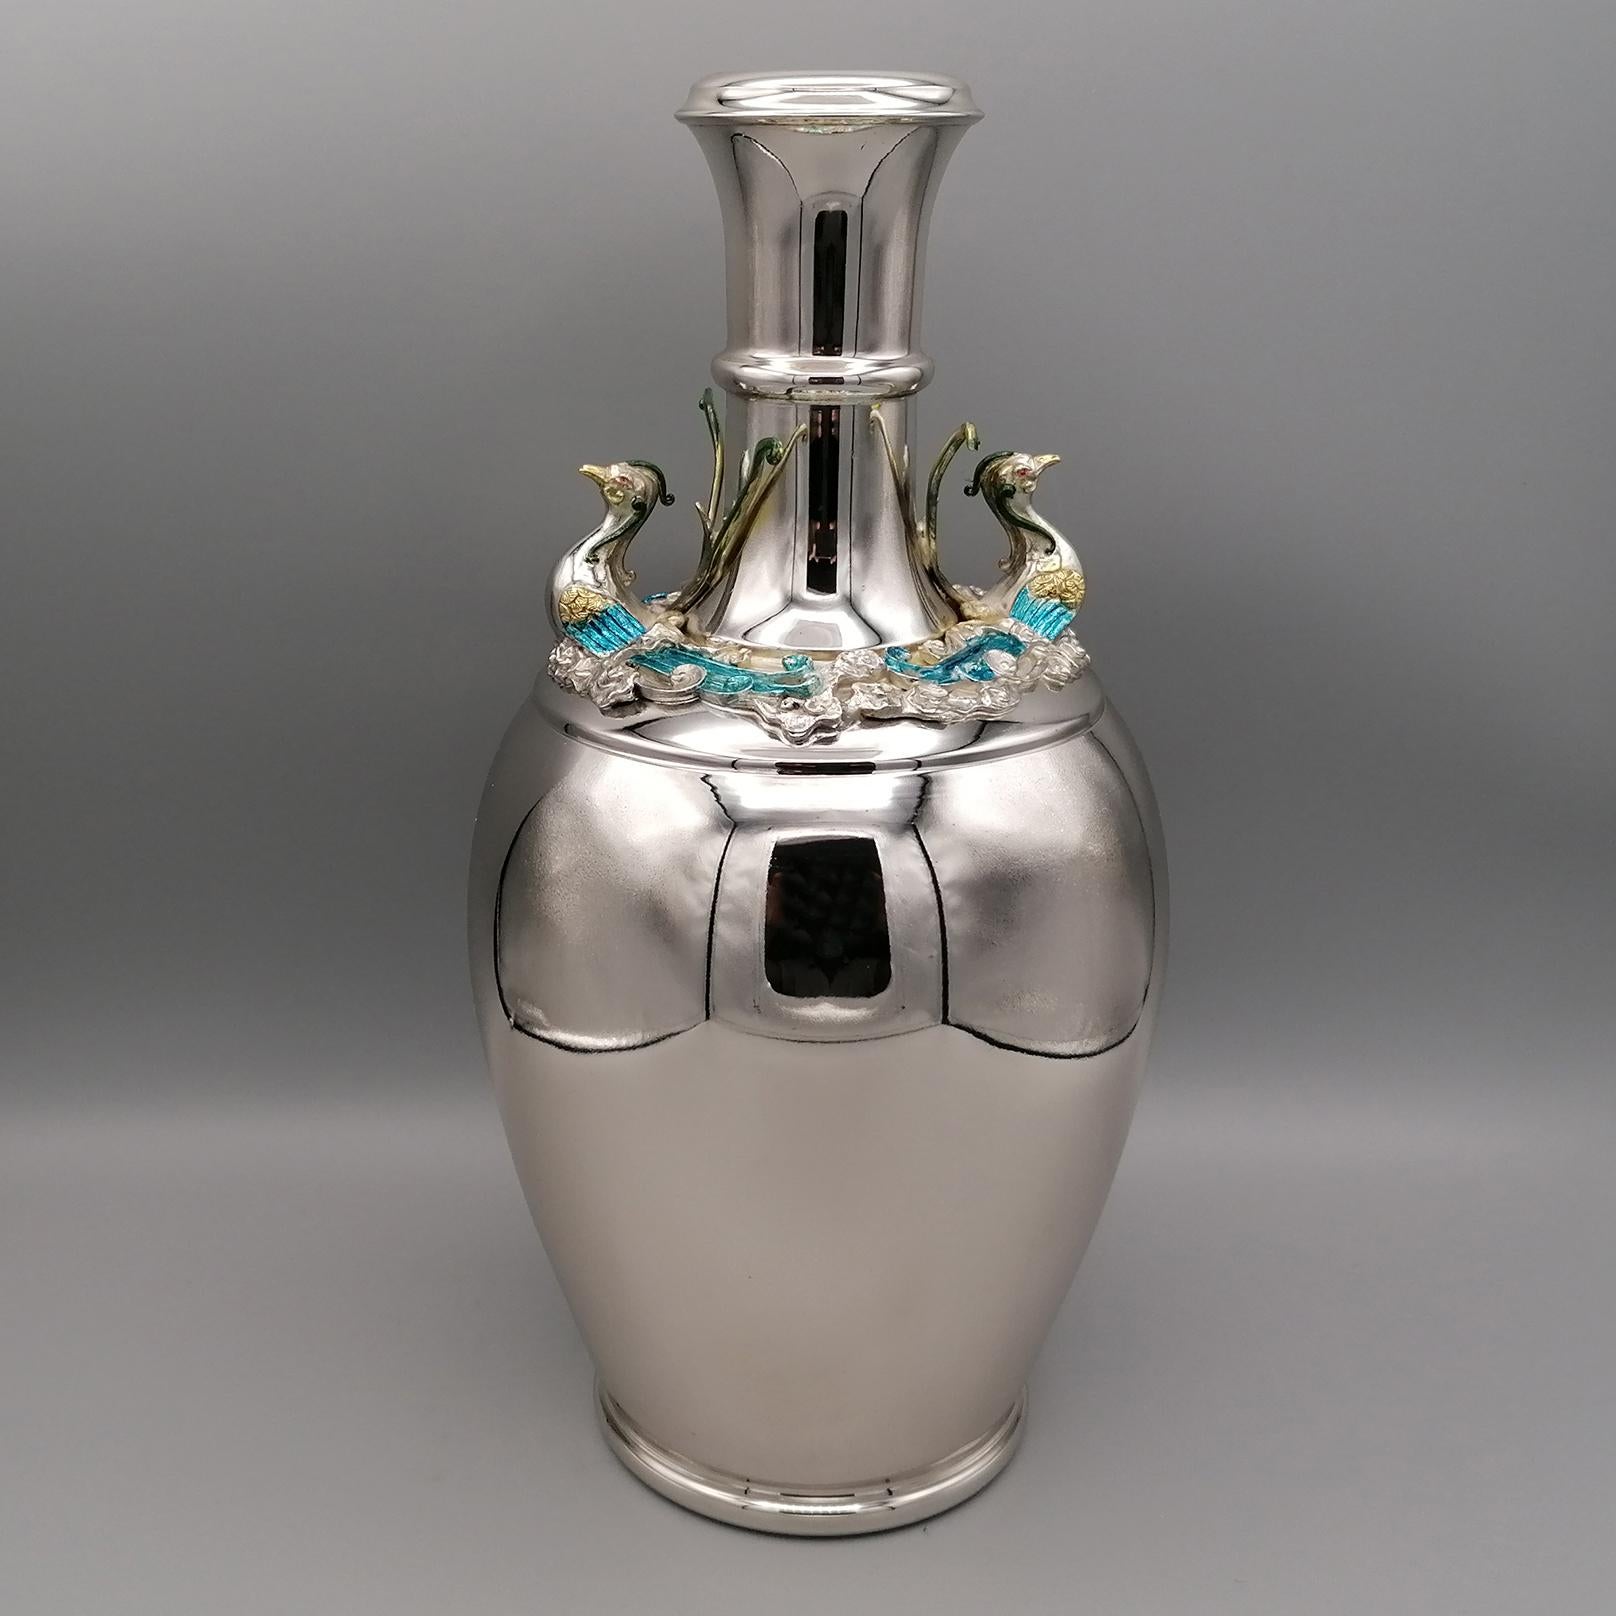 Vase aus massivem Silber 800 mit emailliertem Phoenix,
nachbildung einer Vase aus dem
Ching-Dynastie 1644 - 1911
Chia Ching Zeitraum 1796 - 1821

Vase aus der Kollektion 